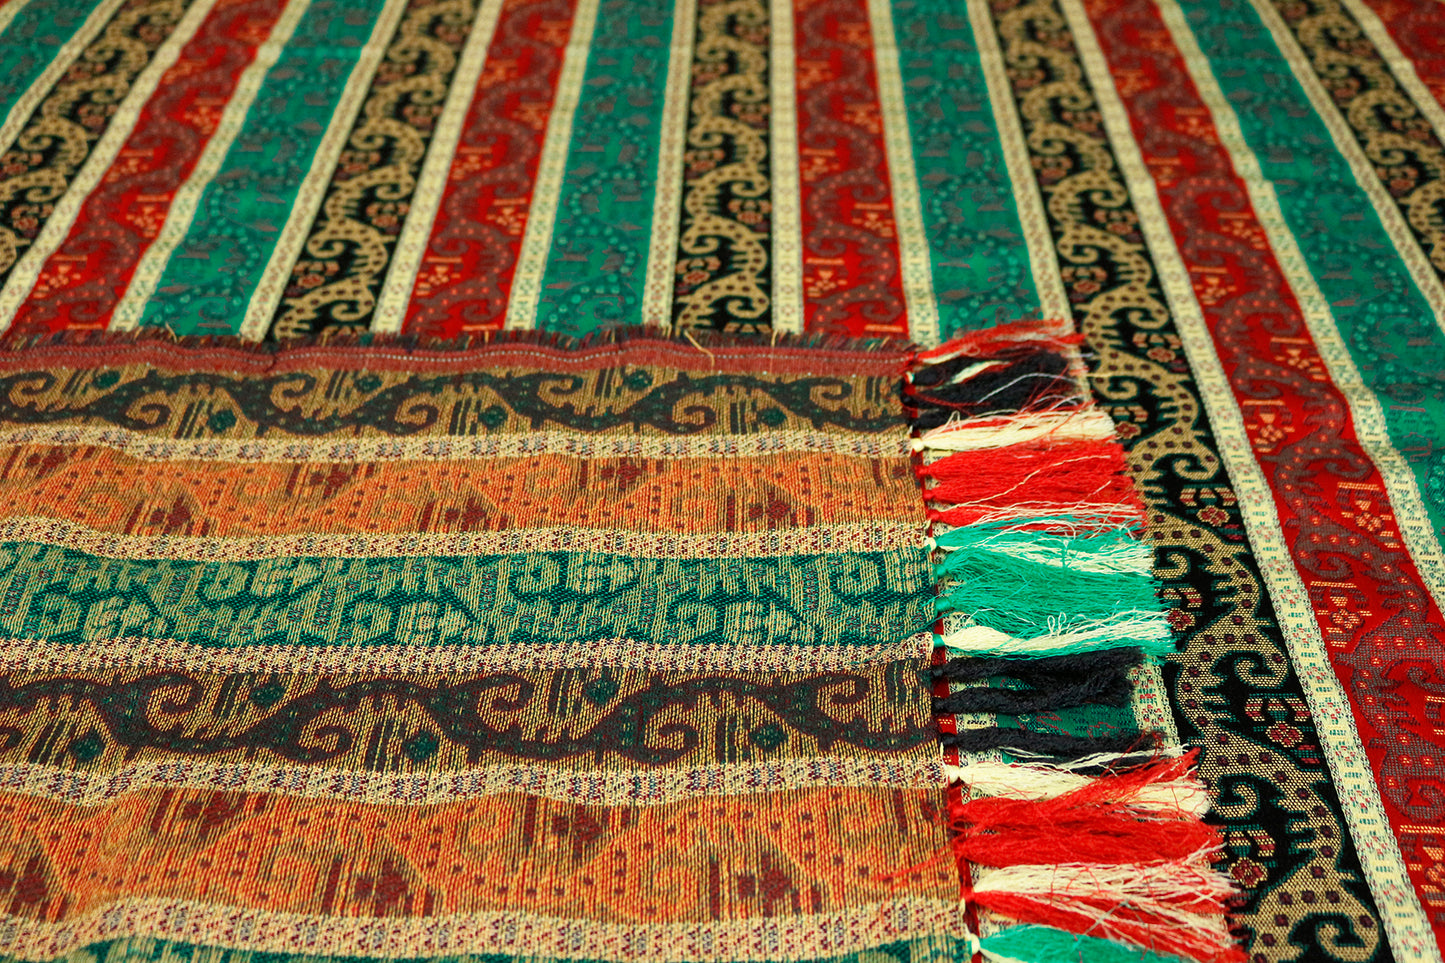 Farbenfrohe Tischdecken aus Baumwollemischung, Damesco Stoffe, Damaskunst TS 002